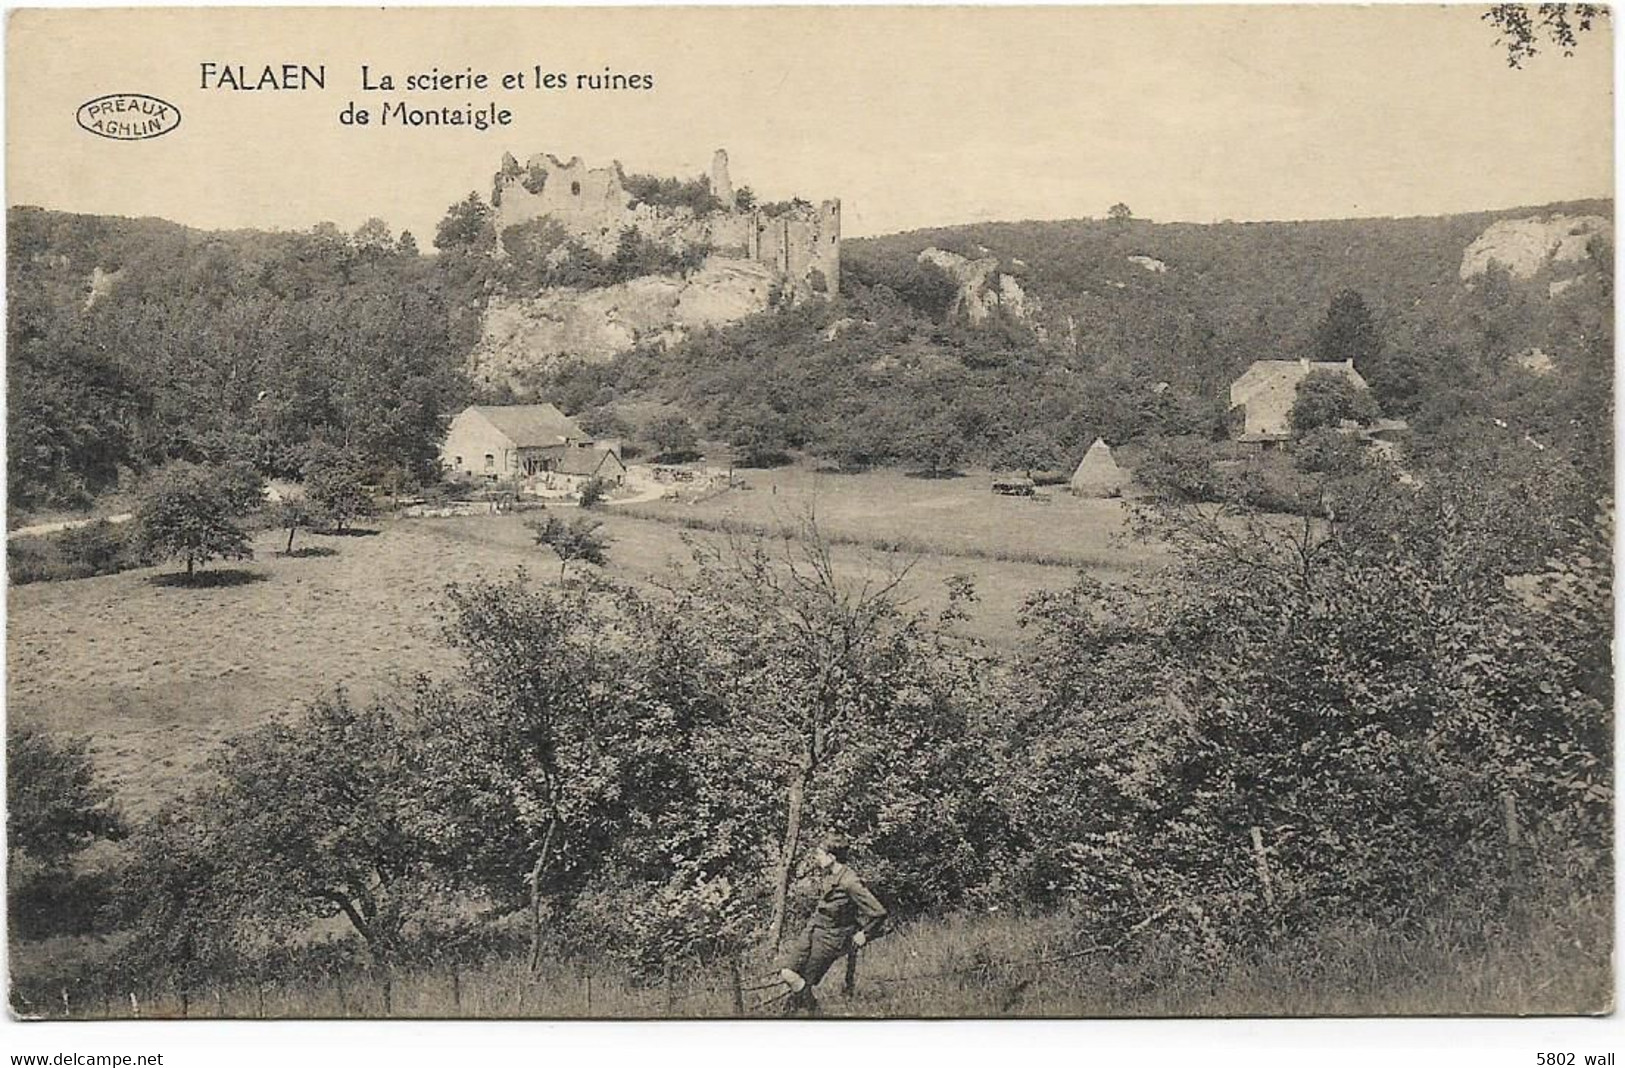 FALAEN : La Scierie Et Les Ruines De Montaigle - Onhaye